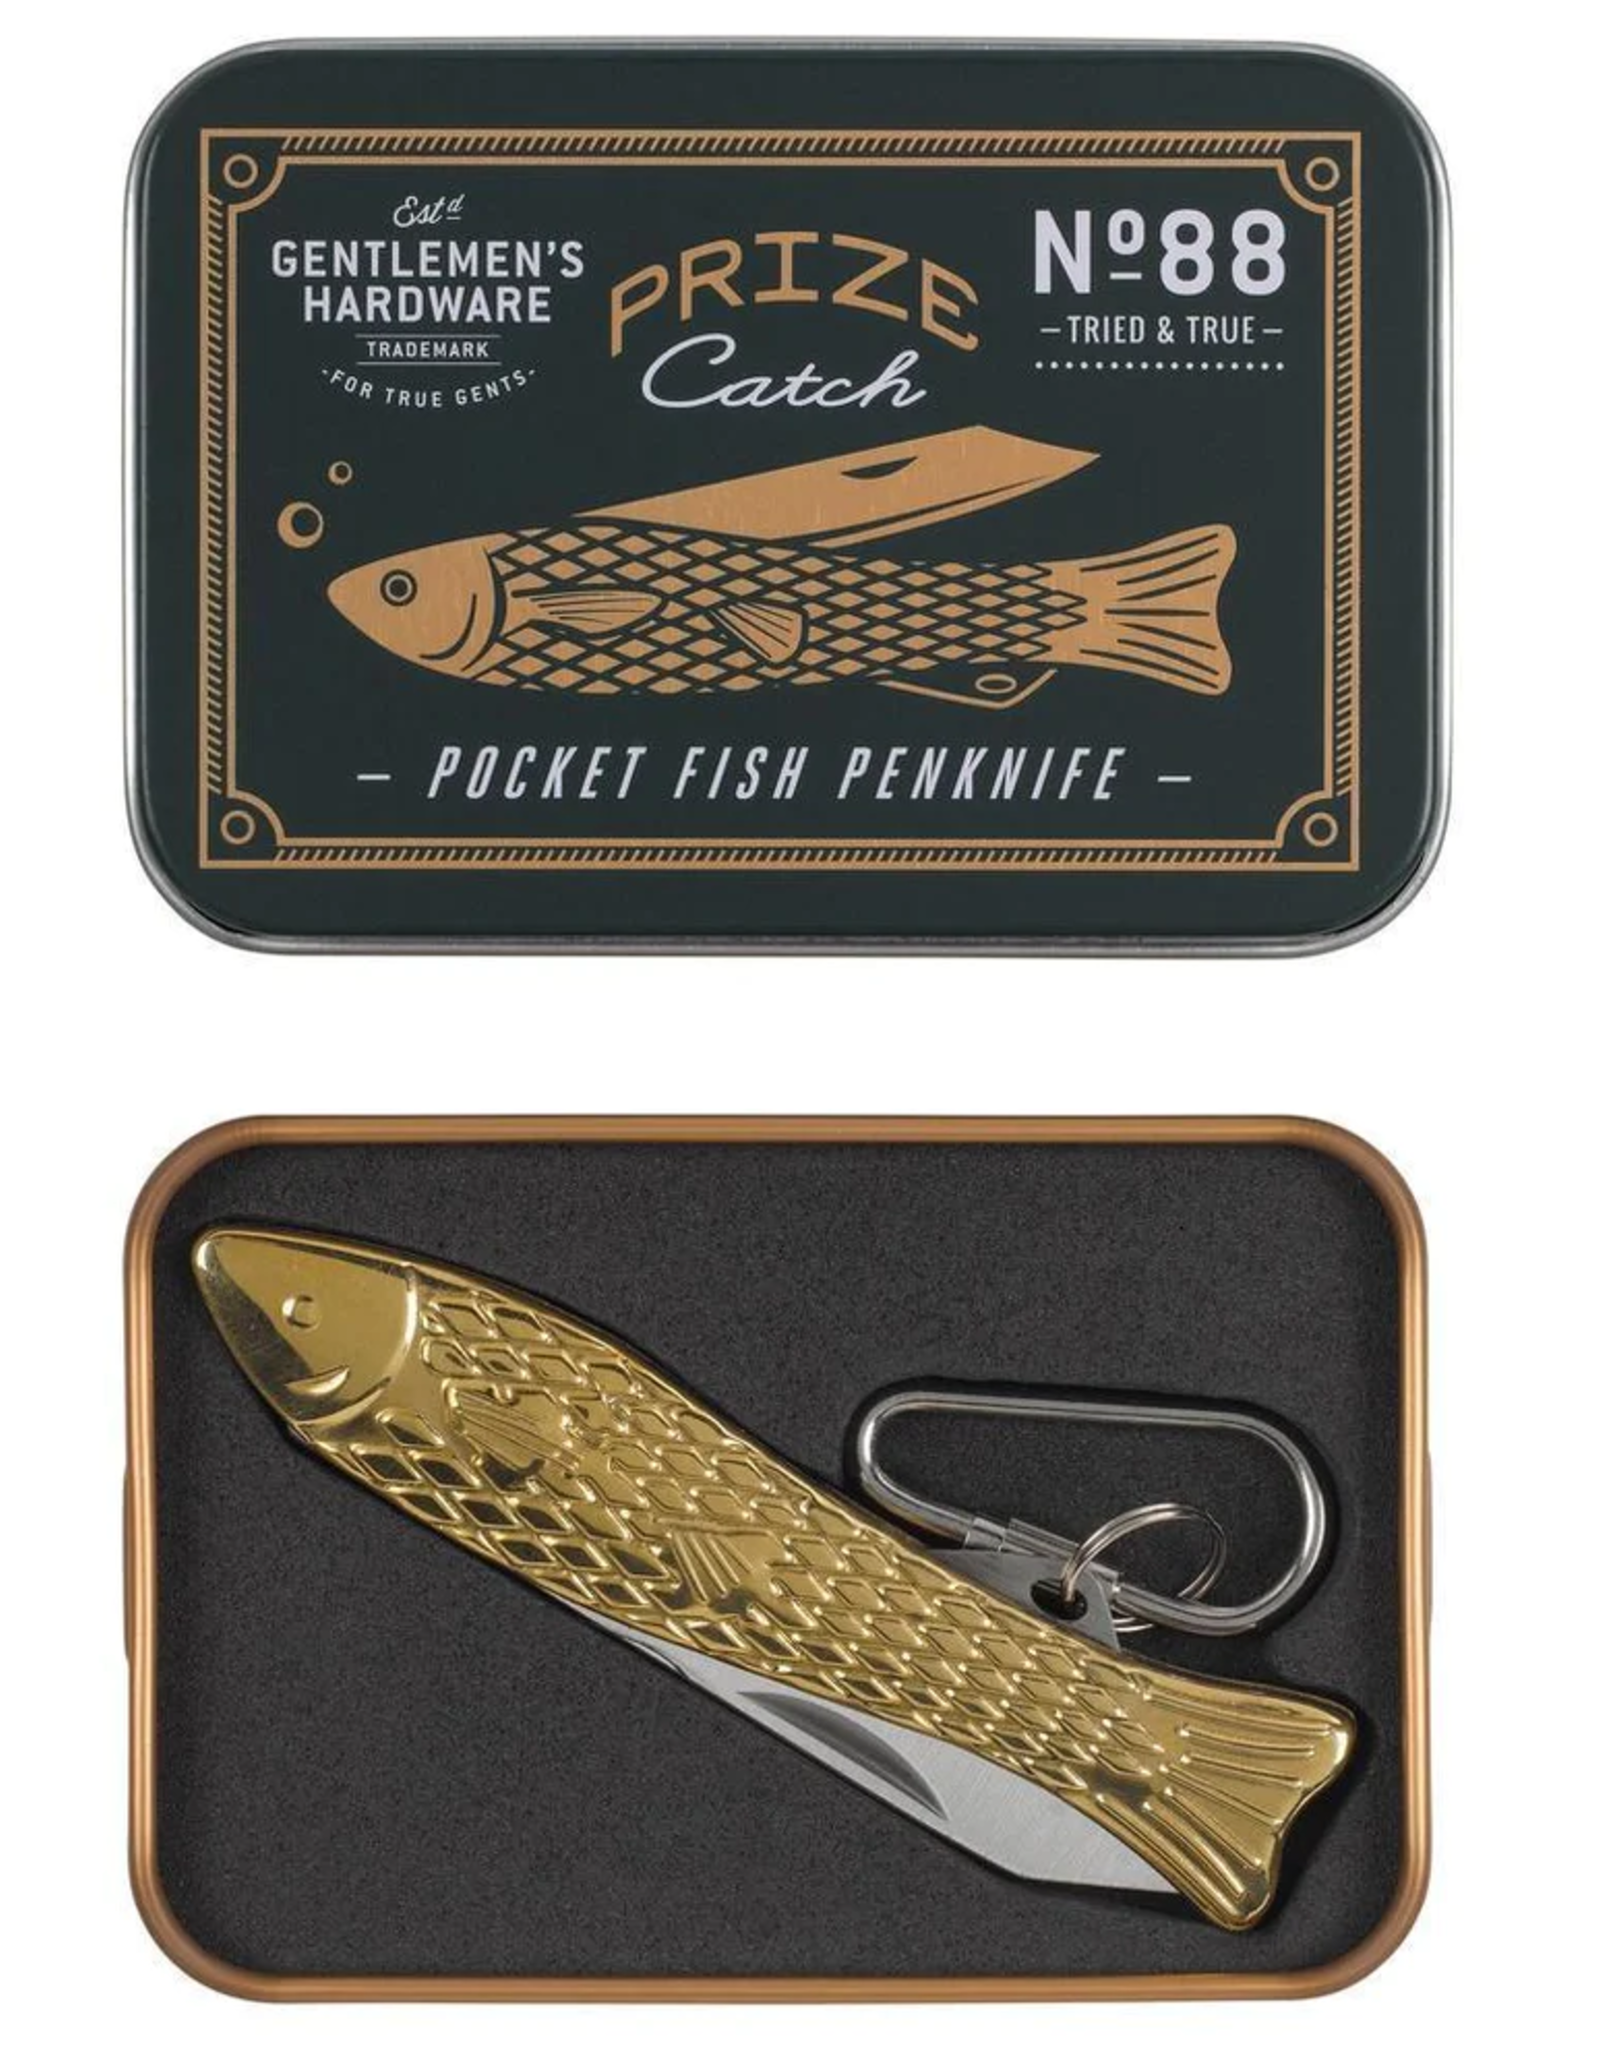 Gentlemens's Hardware Pocket Fish Penknife - Gentlemen's Hardware